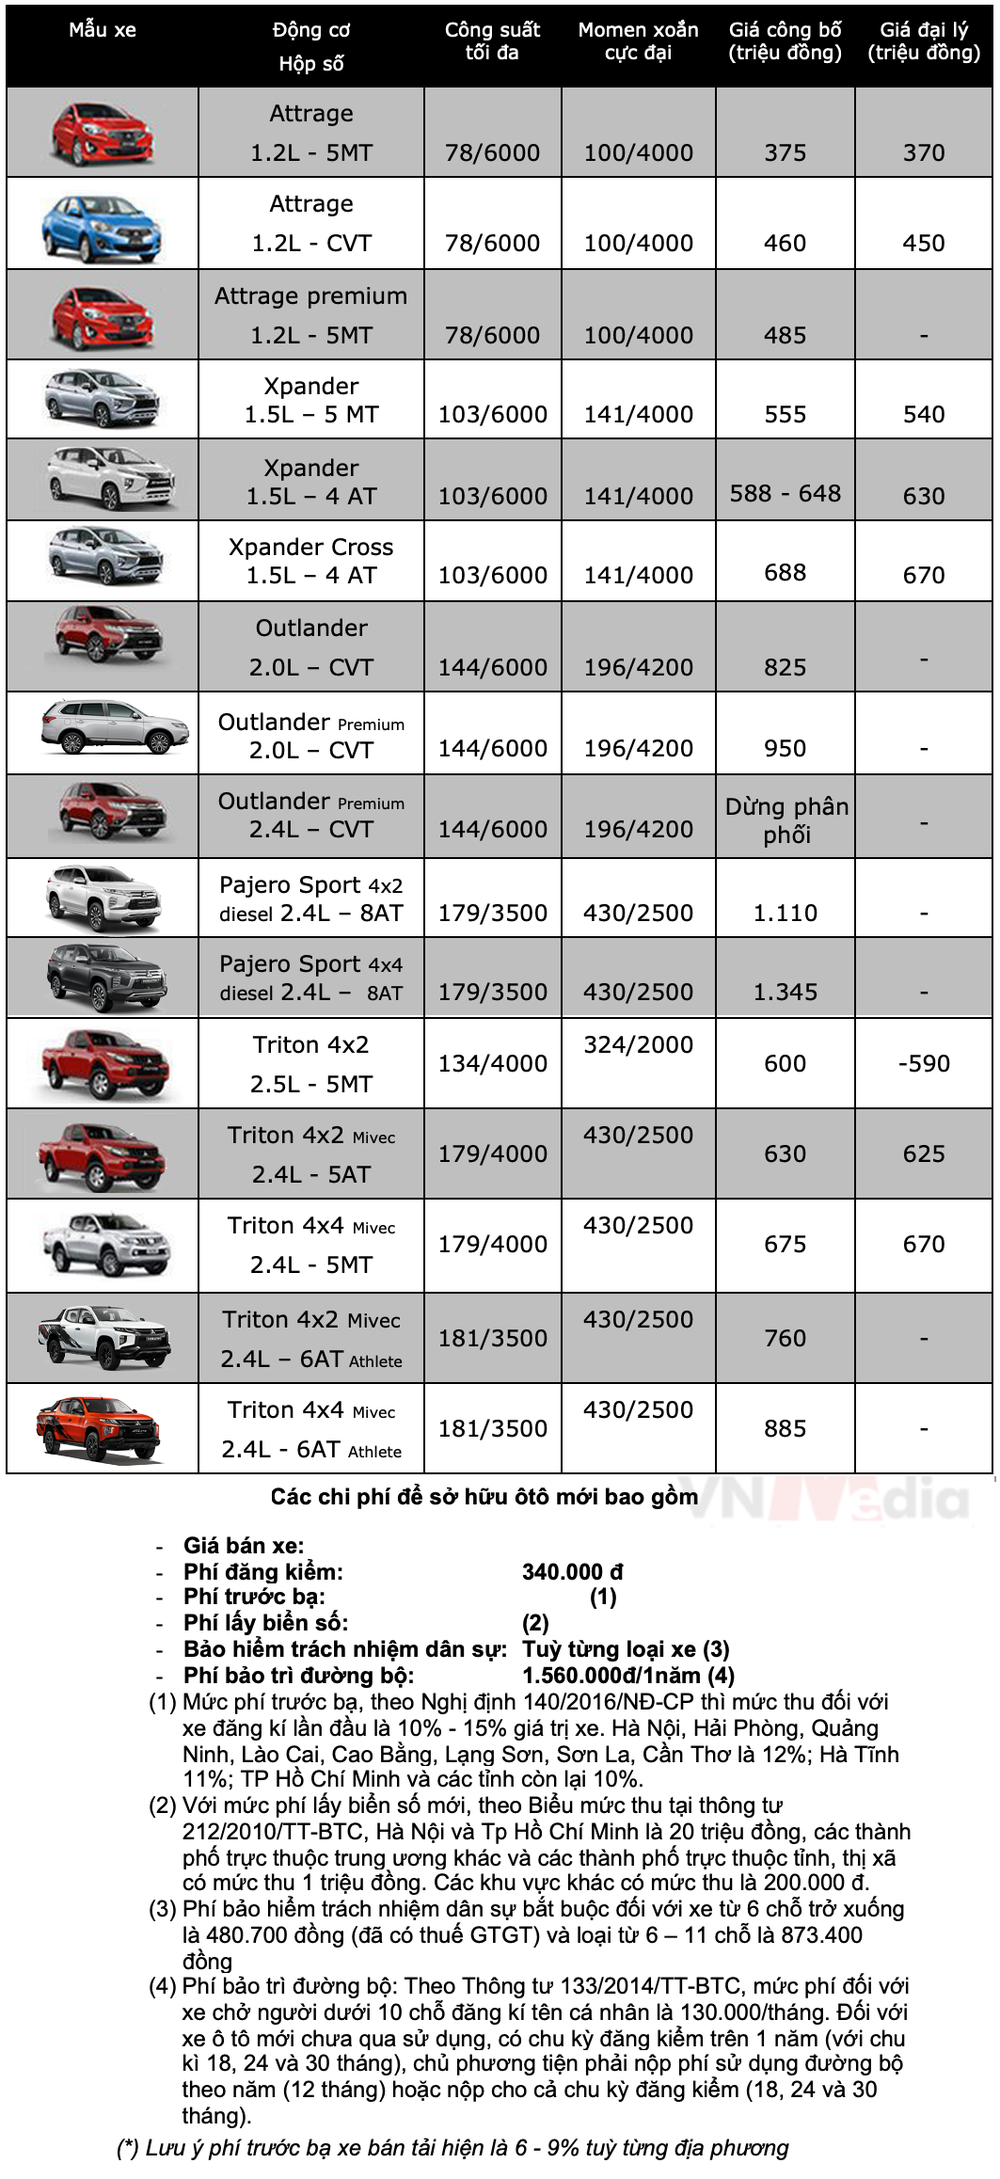 Bảng giá xe Mitsubishi tháng 2: Mitsubishi Outlander nhận ưu đãi gần 70 triệu đồng - Ảnh 2.